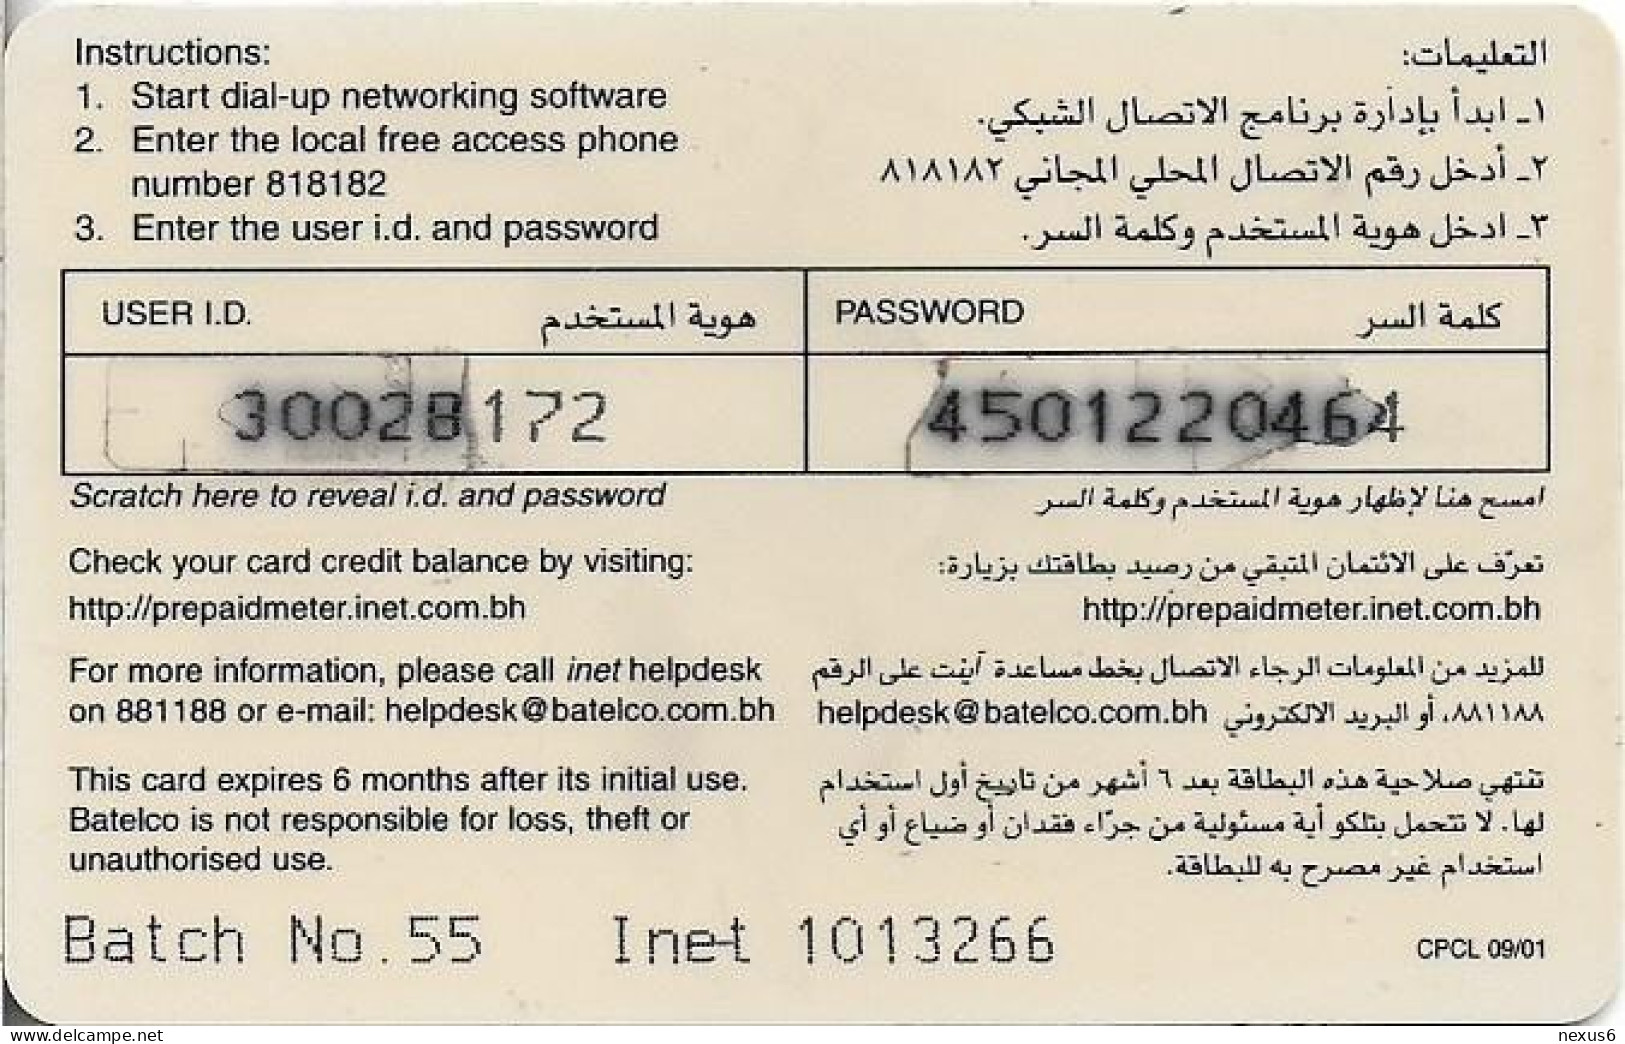 Bahrain - Batelco - Inet Internet Services, 3BD Prepaid Card, Used - Bahrein